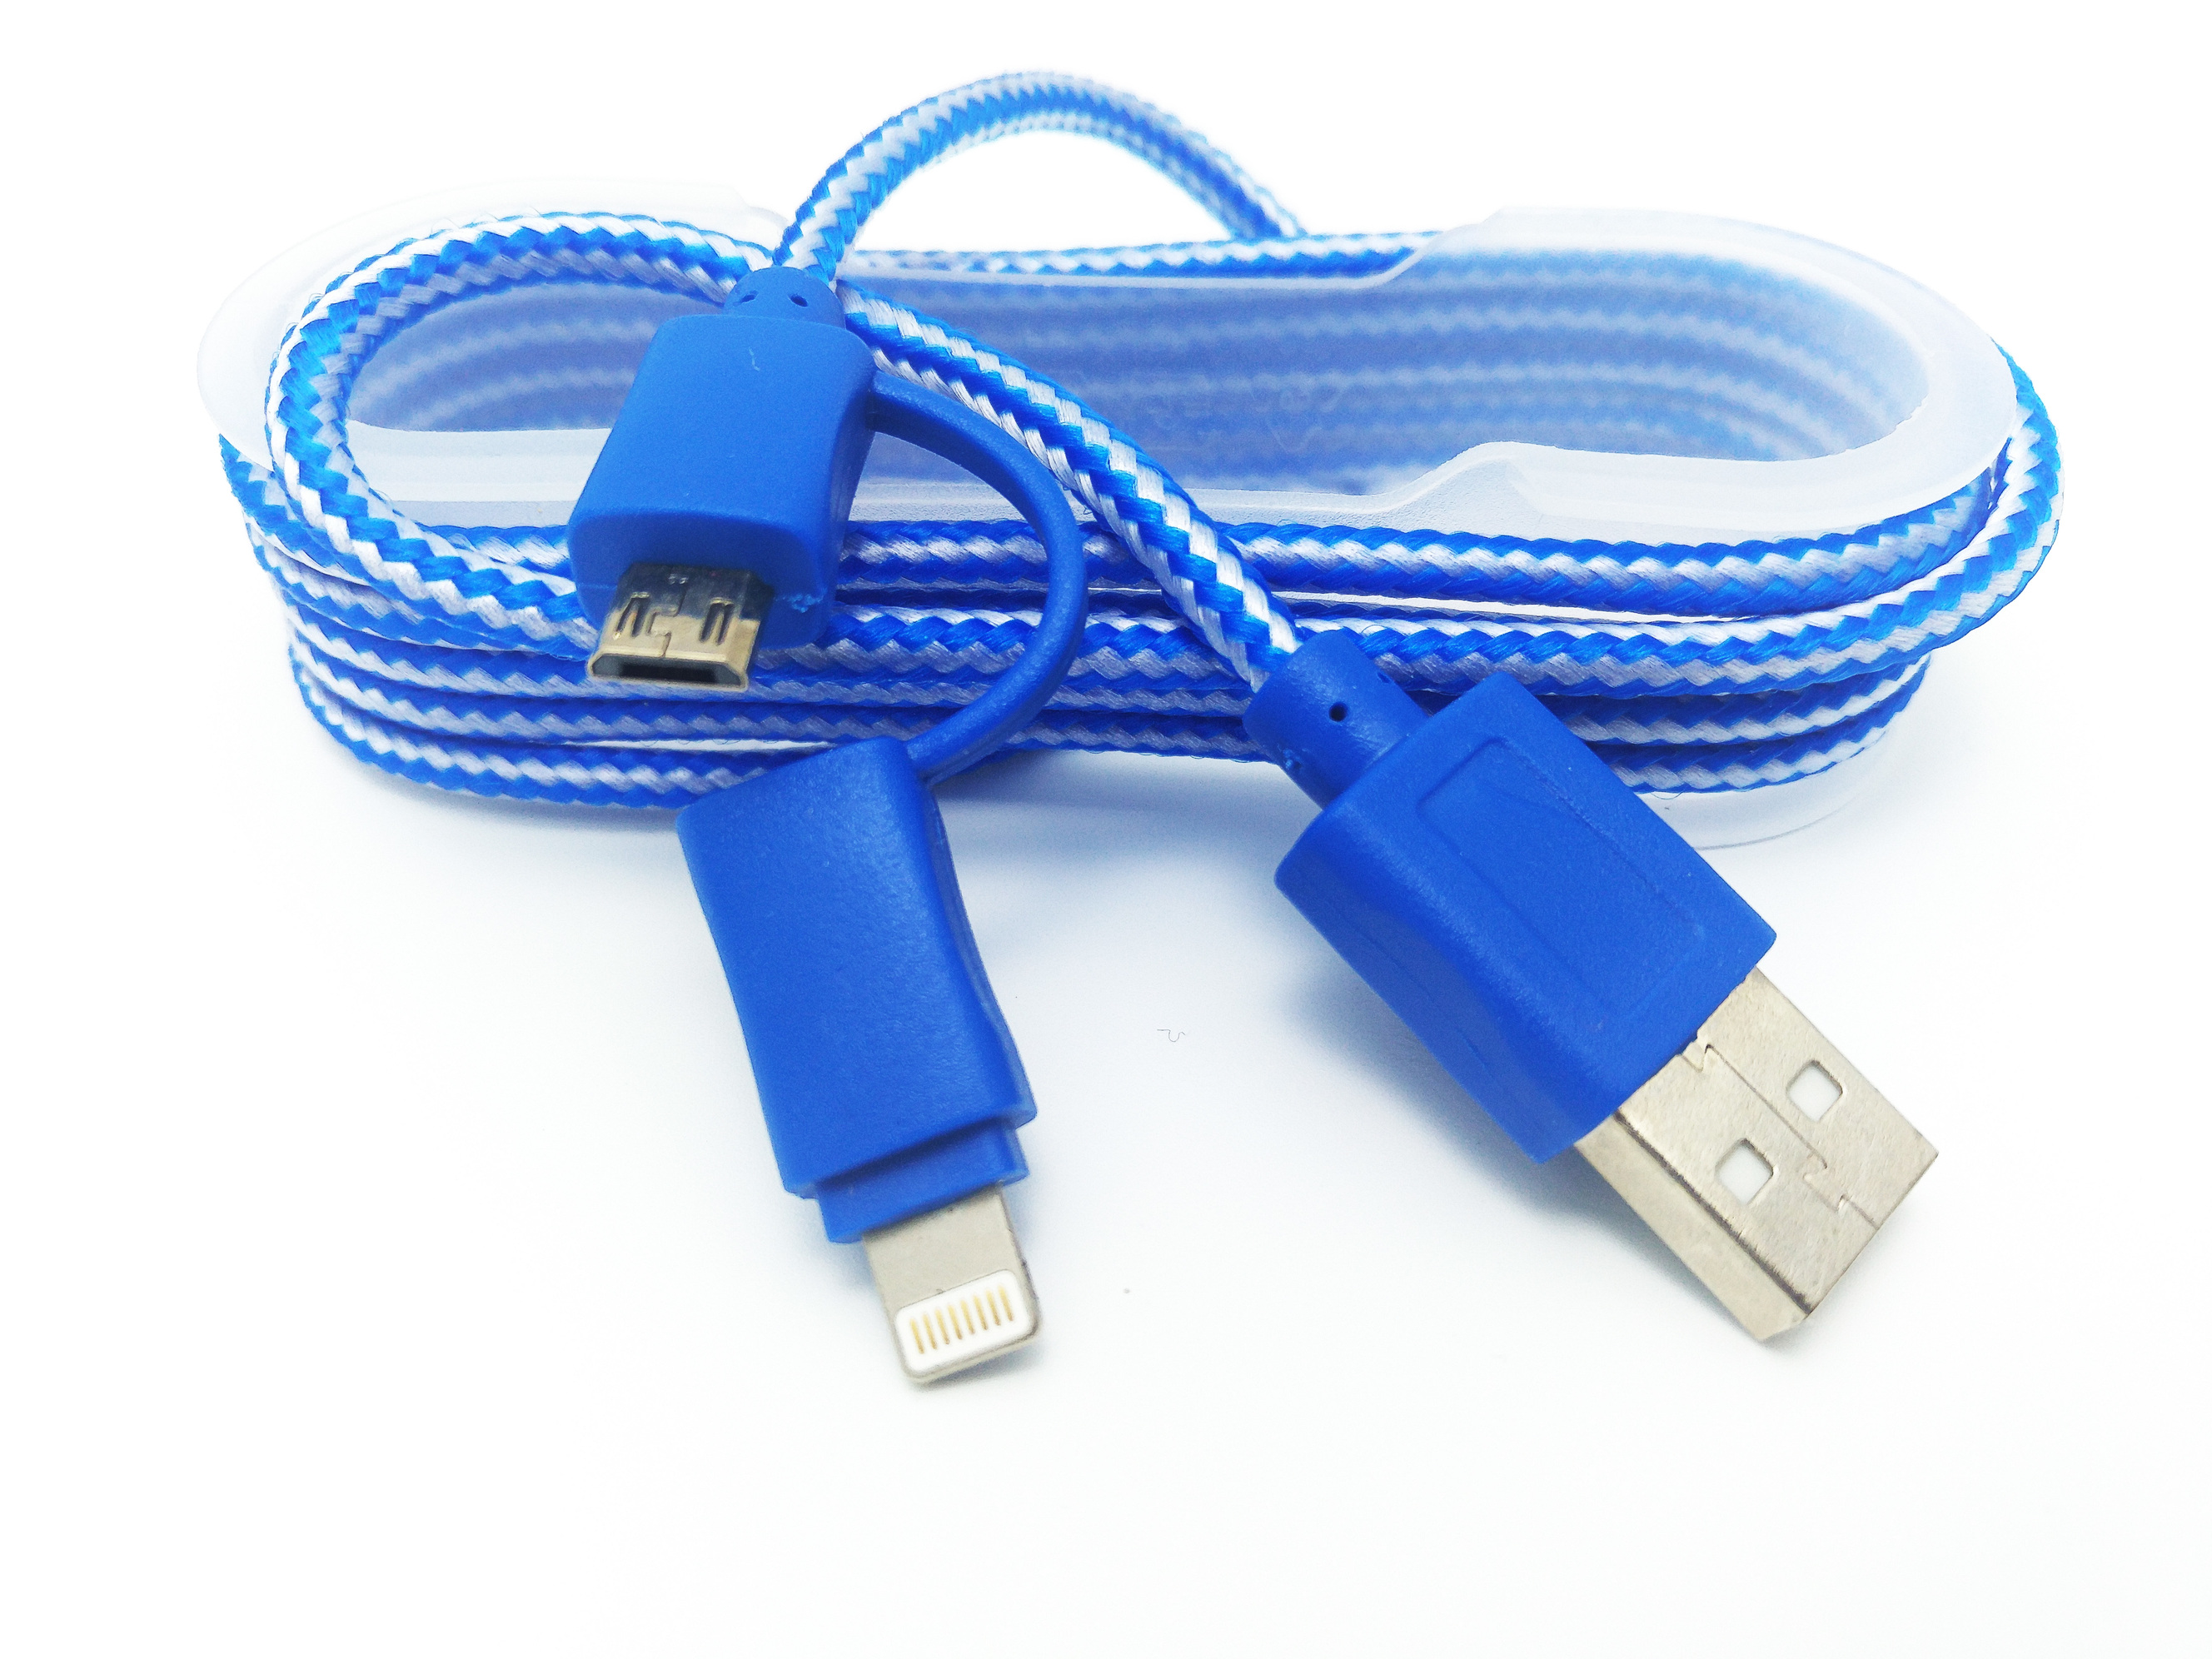 Cablu De Date MRG M-174, 2 In 1, Iphone 5/6 + Micro USB, Albastru